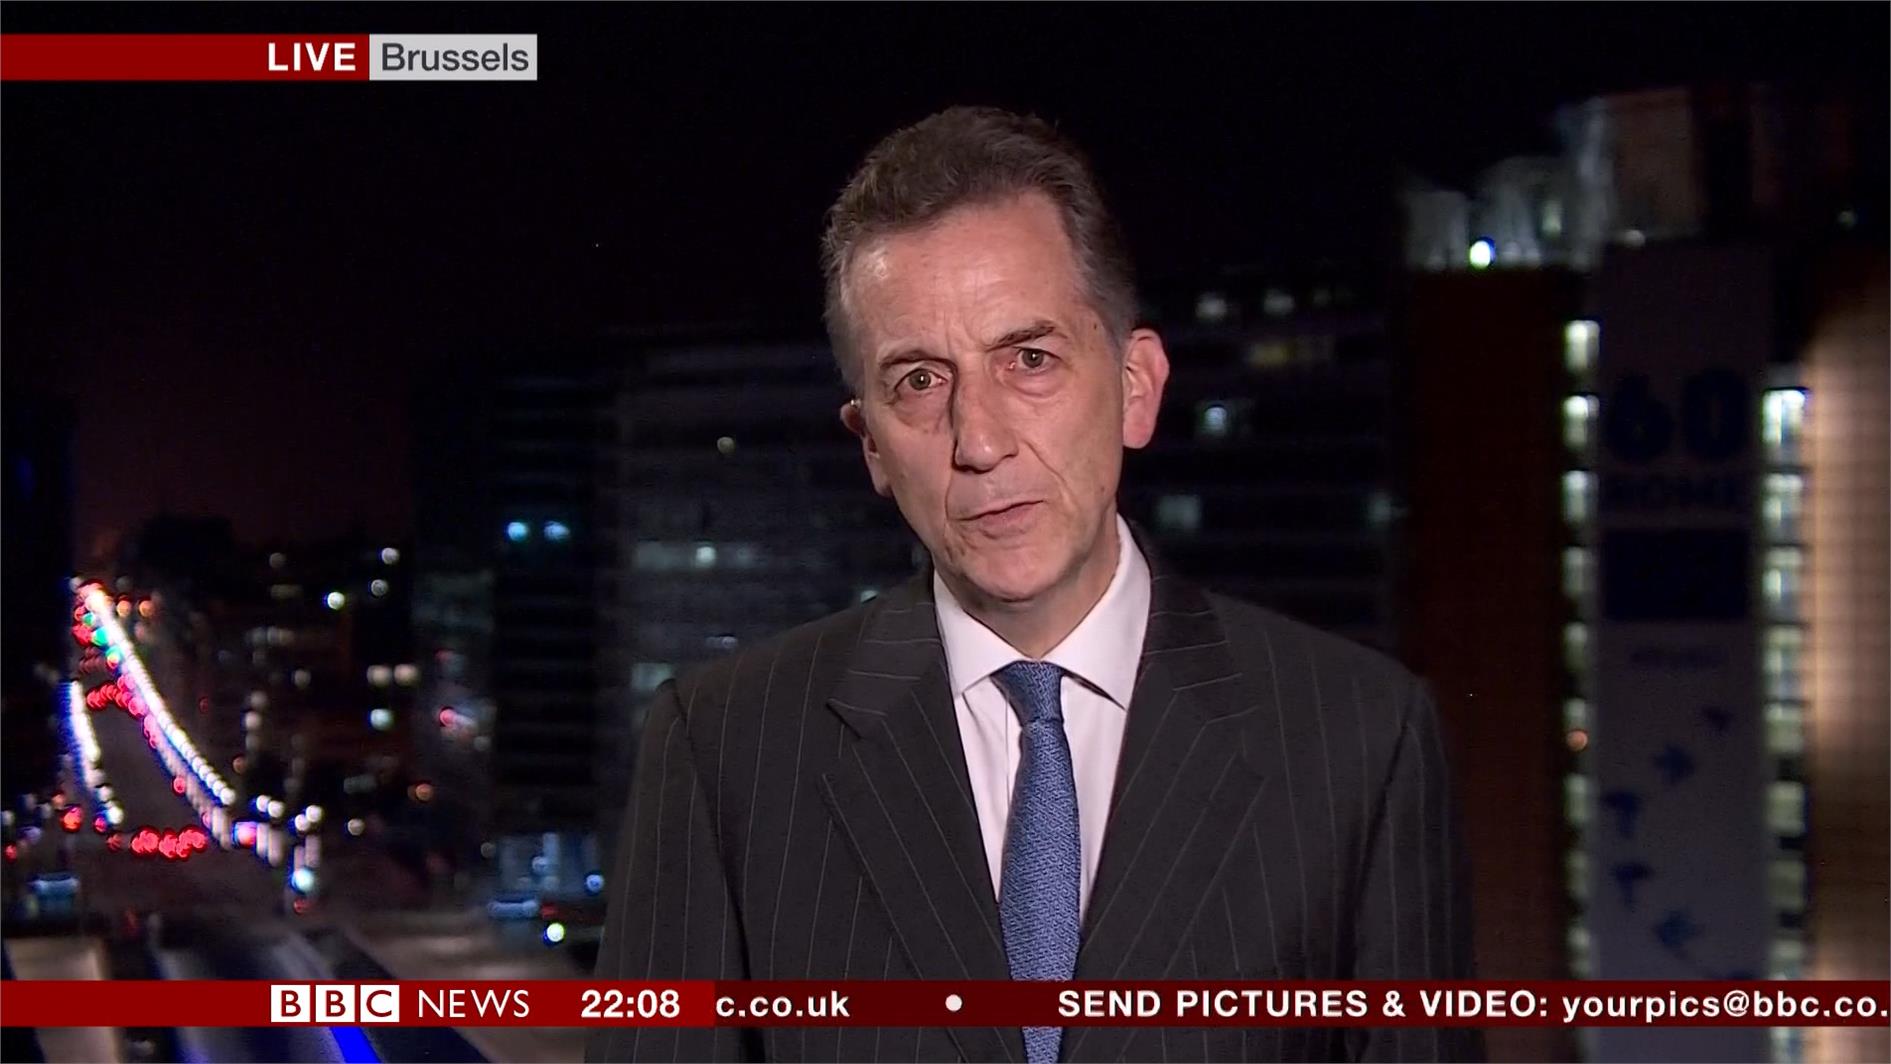 Chris Morris BBC News Reporter